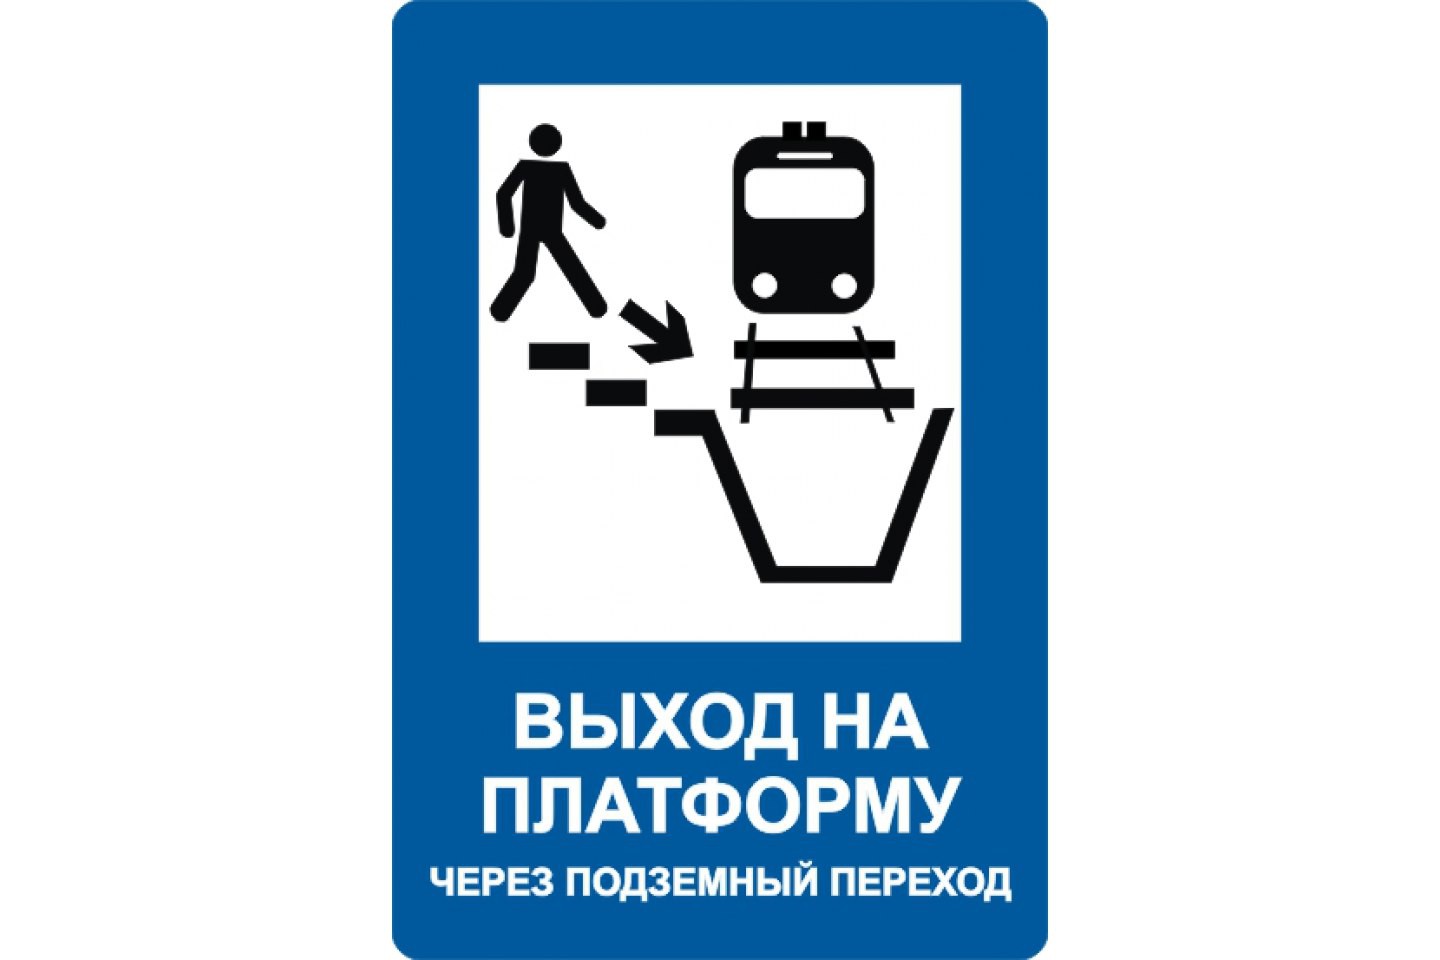 железнодорожные знаки безопасности фото